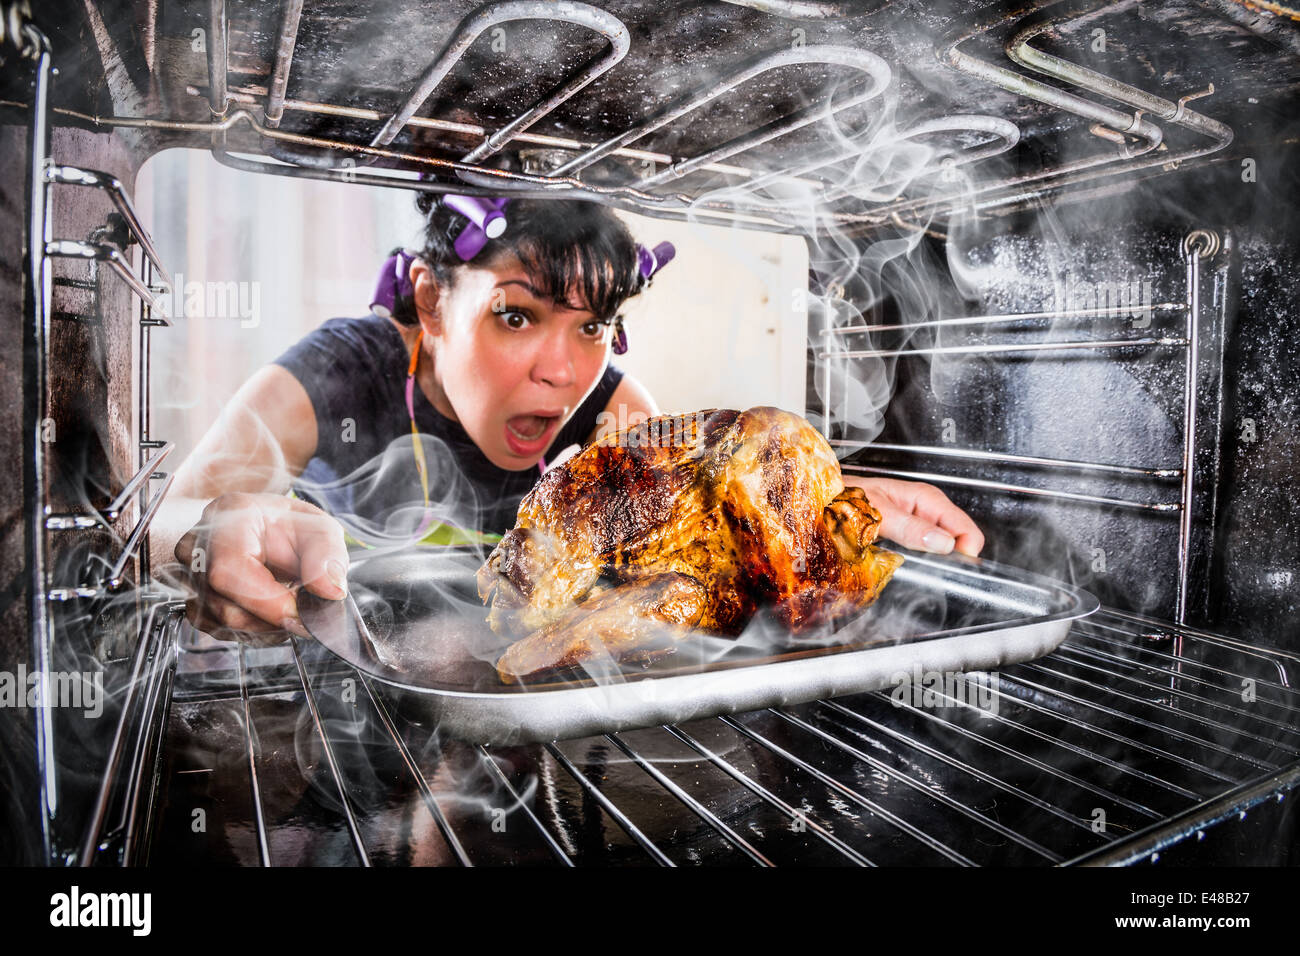 Ama de casa prepara pollo asado en el horno, vista desde el interior de la estufa. La cocción en el horno. Foto de stock